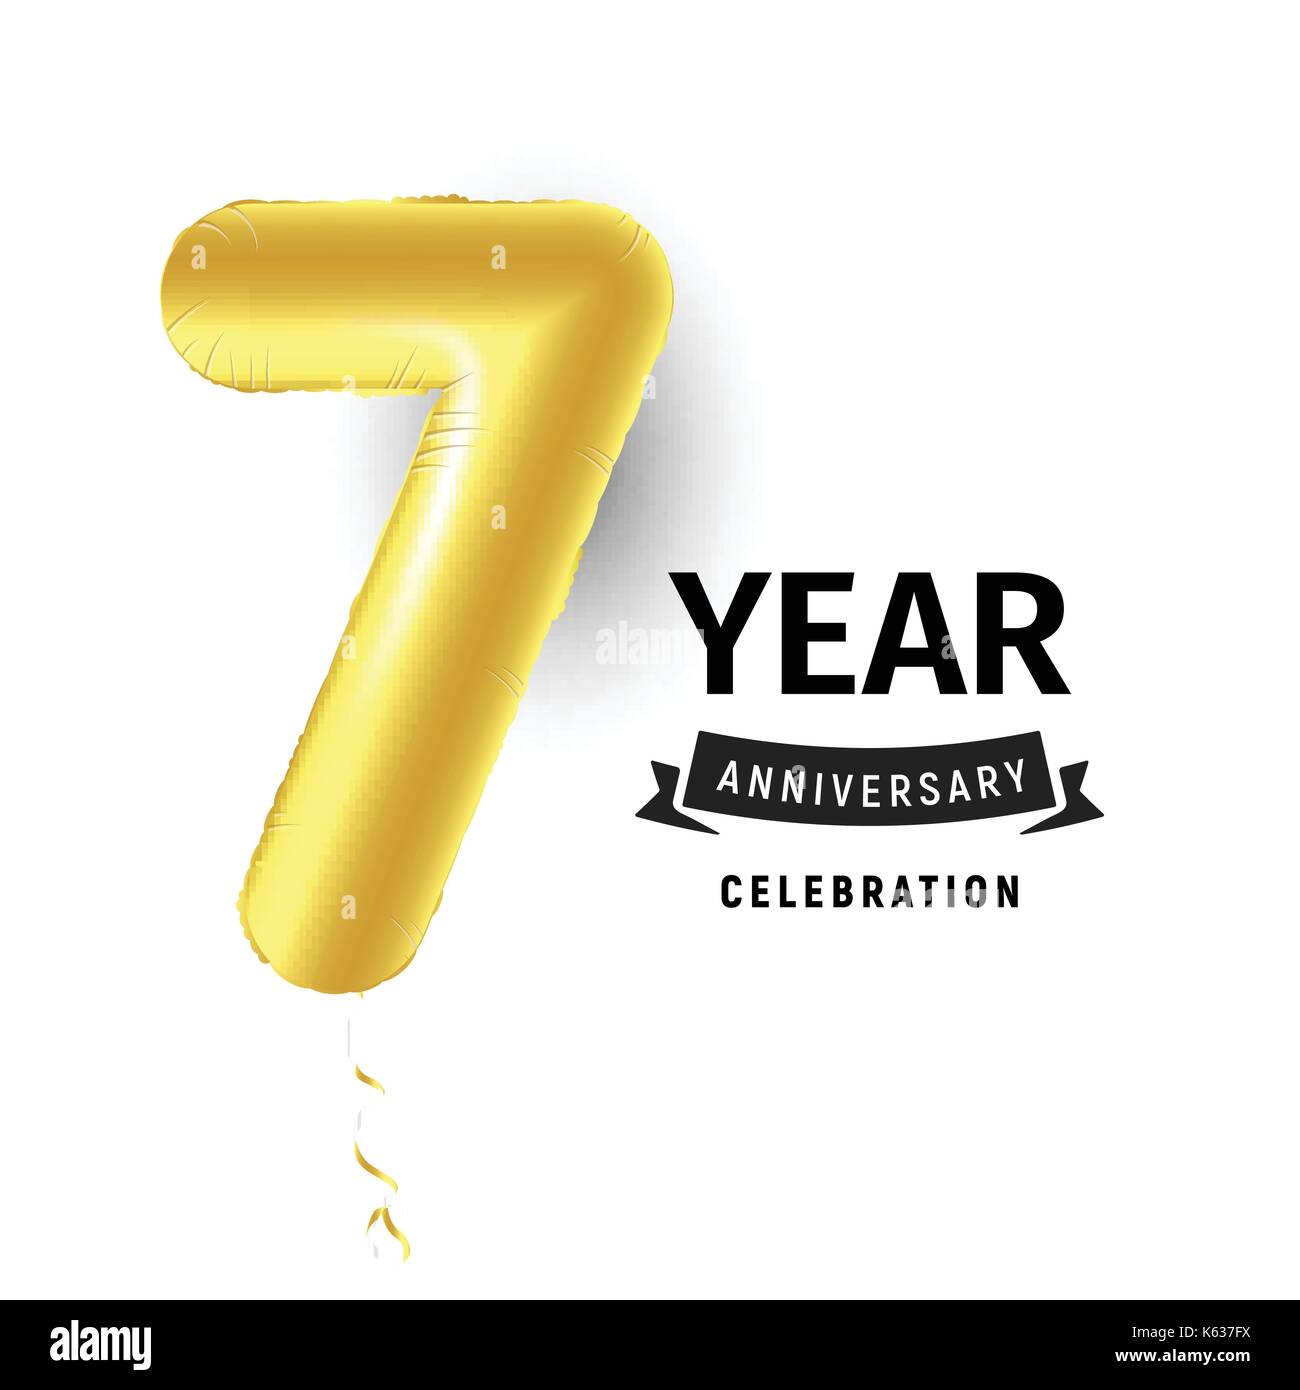 Aufblasbare Golden Ball ein Jahr mit Symbol 7. Vector Illustration oder Poster für 7. Geburtstag des Kindes, Business, Jubiläum. Stock Vektor